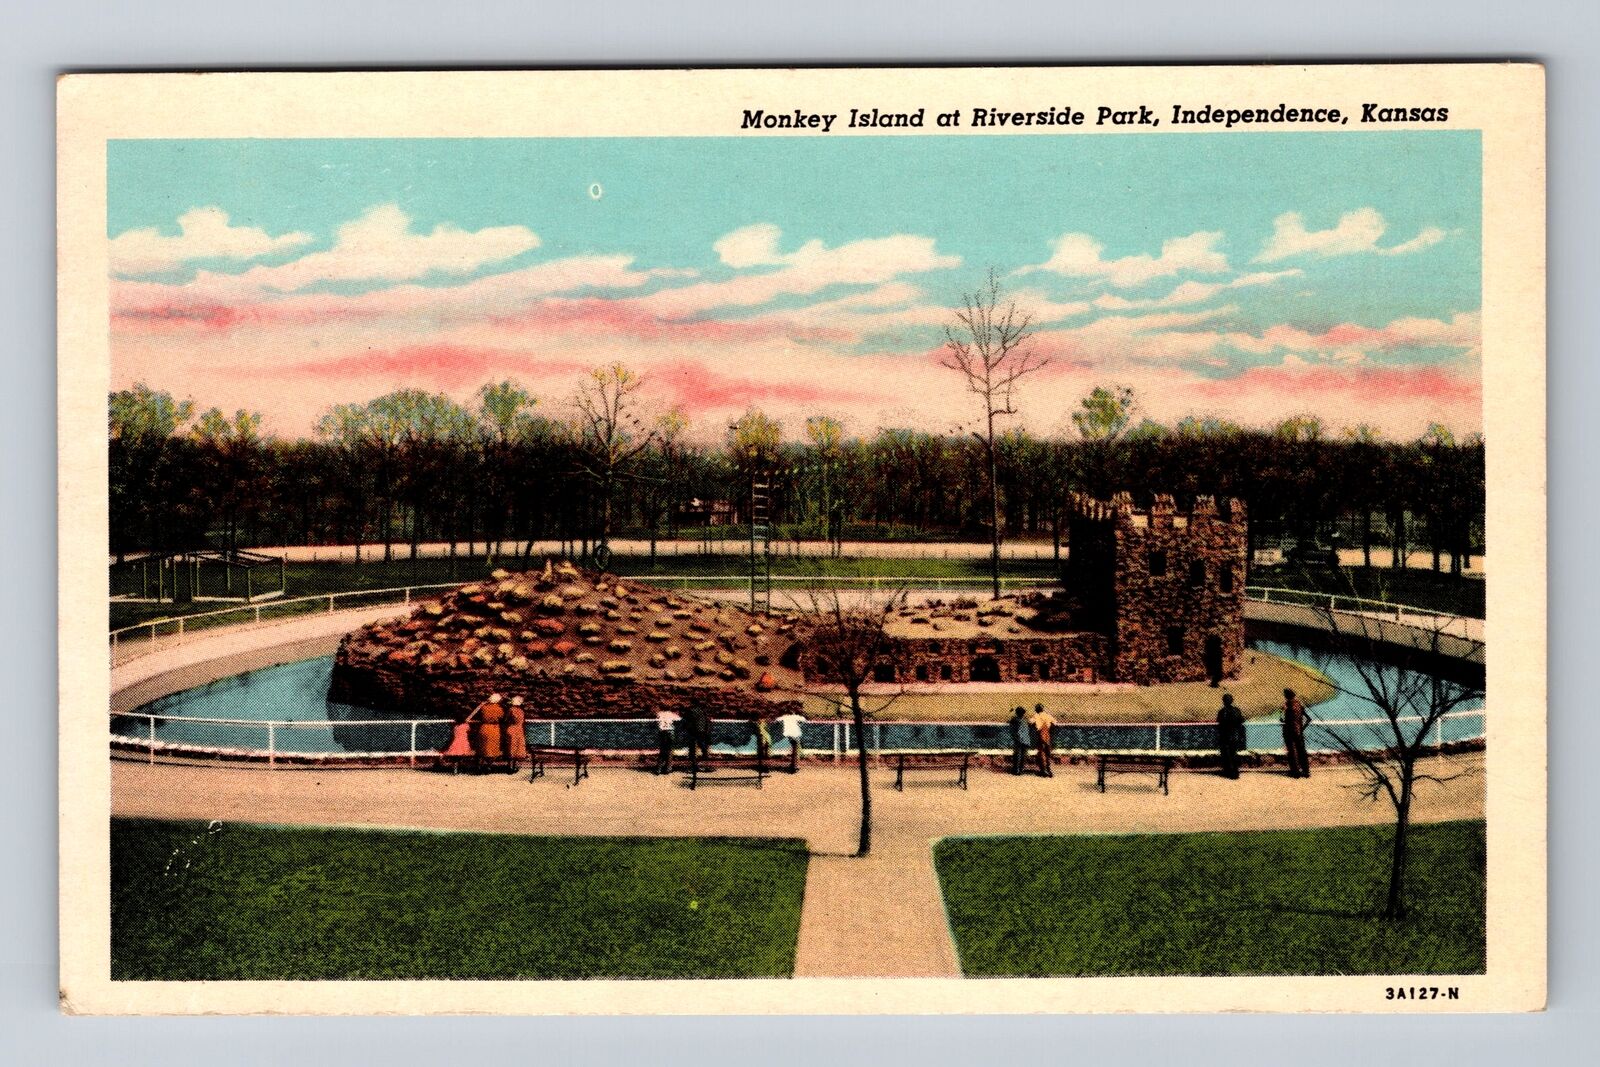 Independence KS-Kansas, Monkey Island Riverside Park, Antique Vintage Postcard